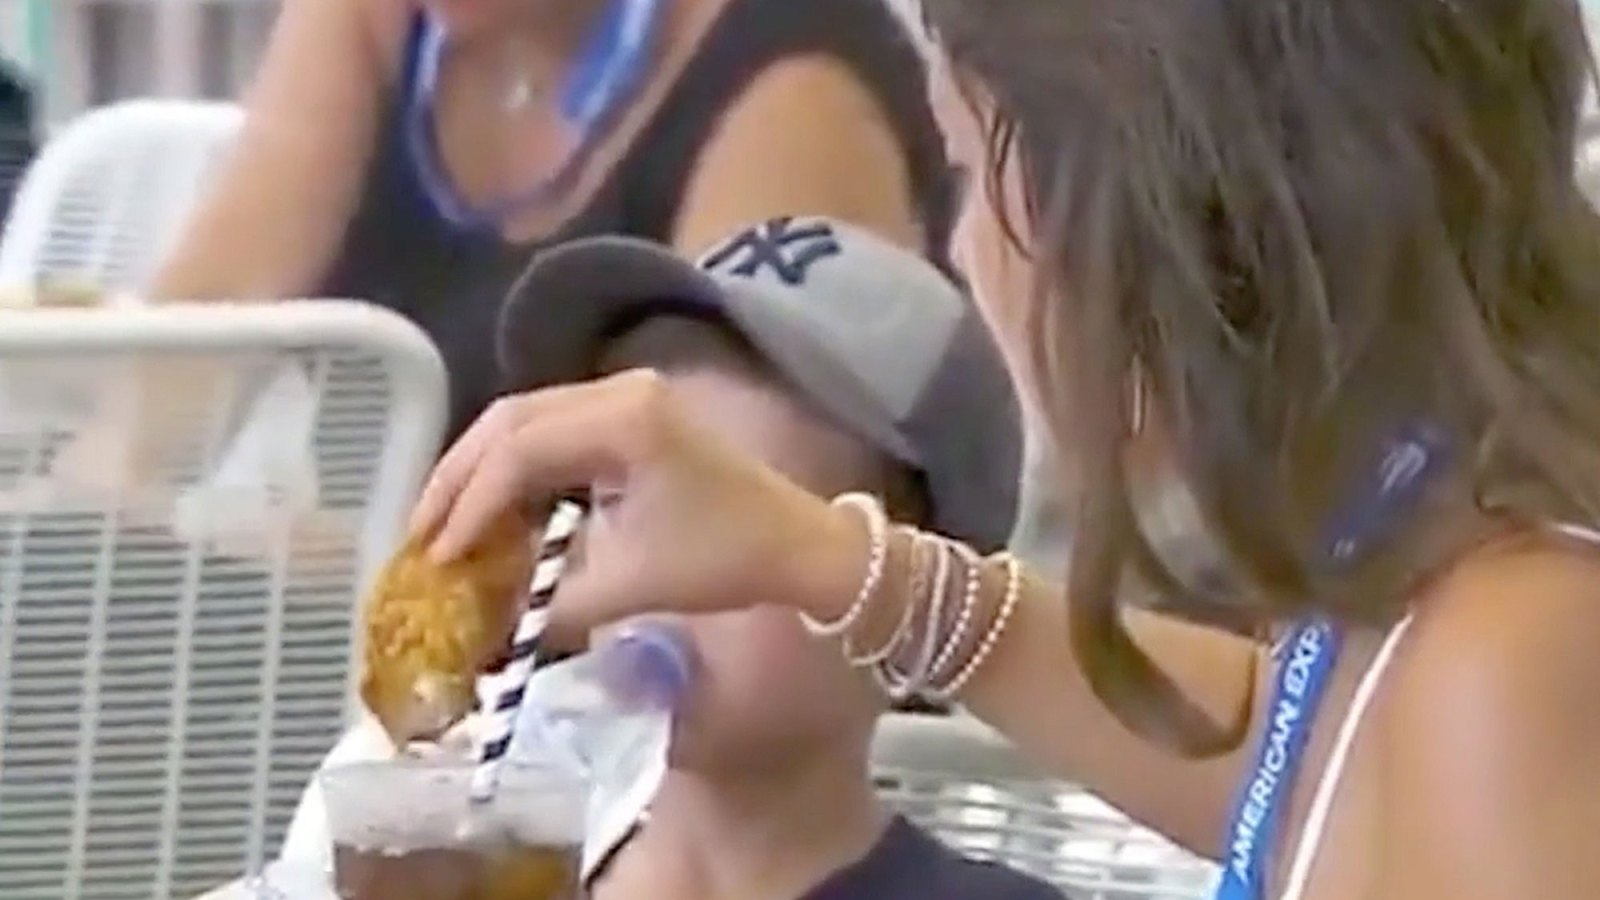 Woman Dips Chicken Tender in Soda